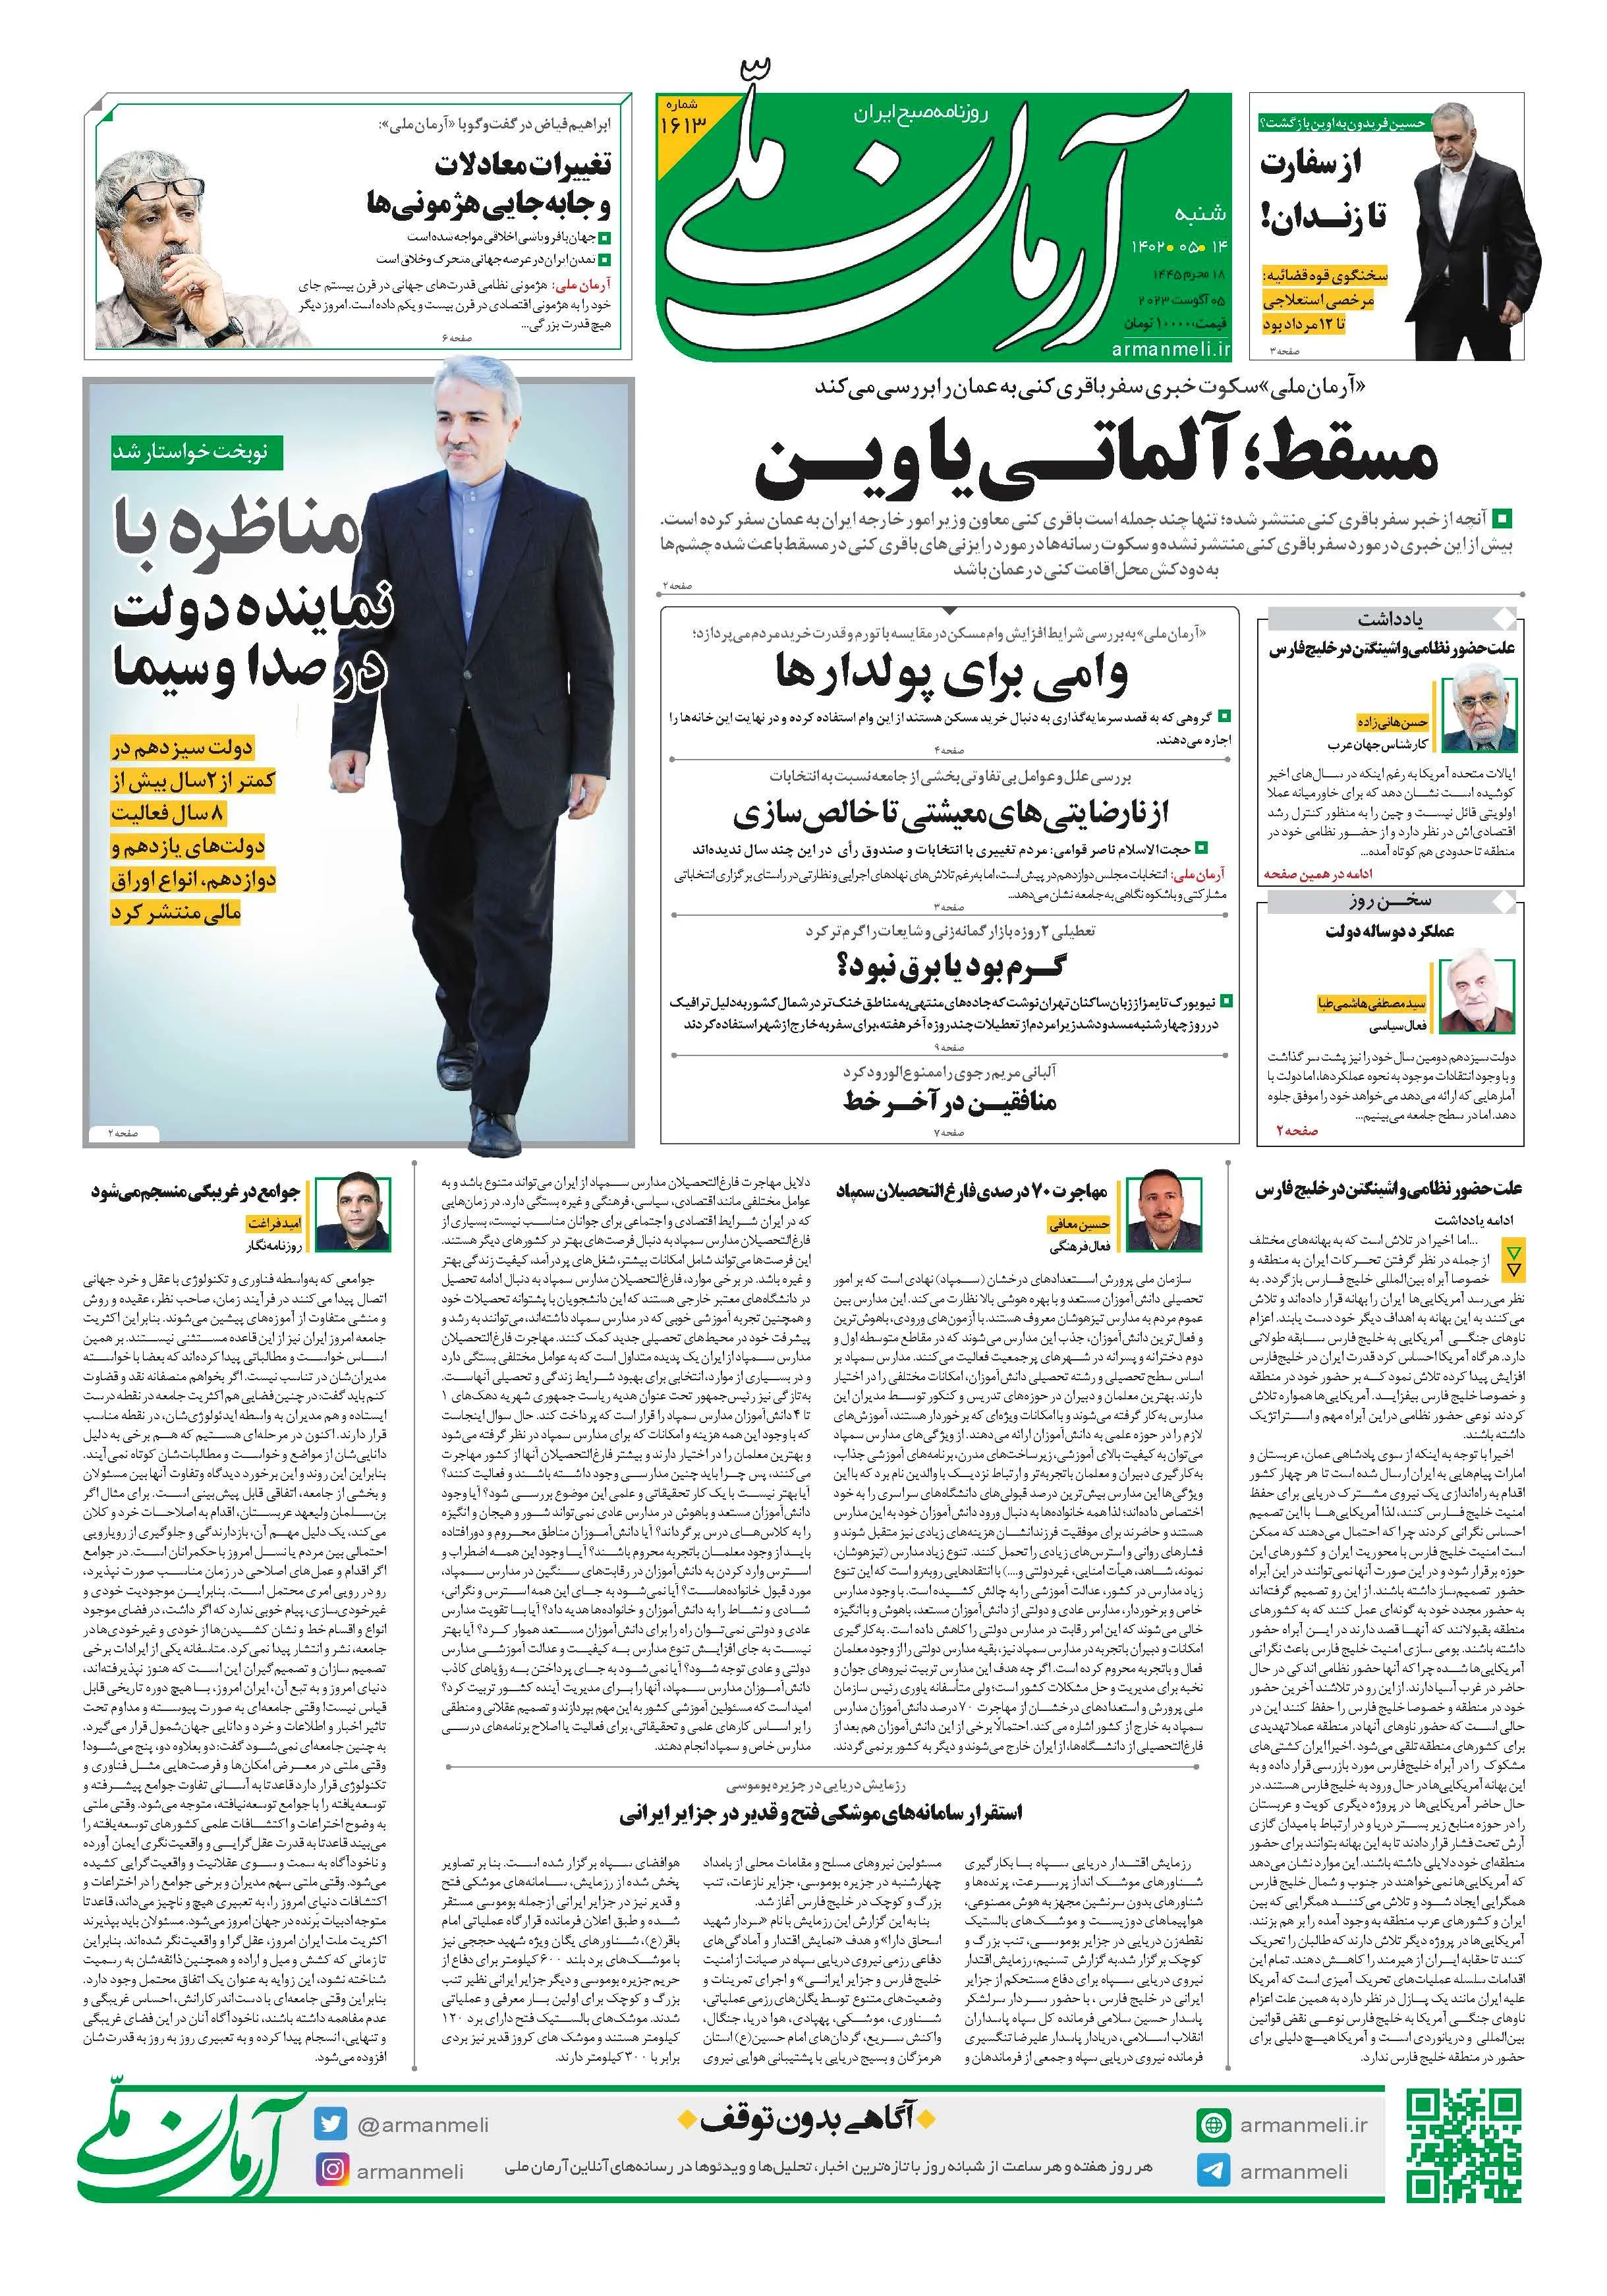 روزنامه آرمان ملی - شنبه 14 مرداد - شماره 1613